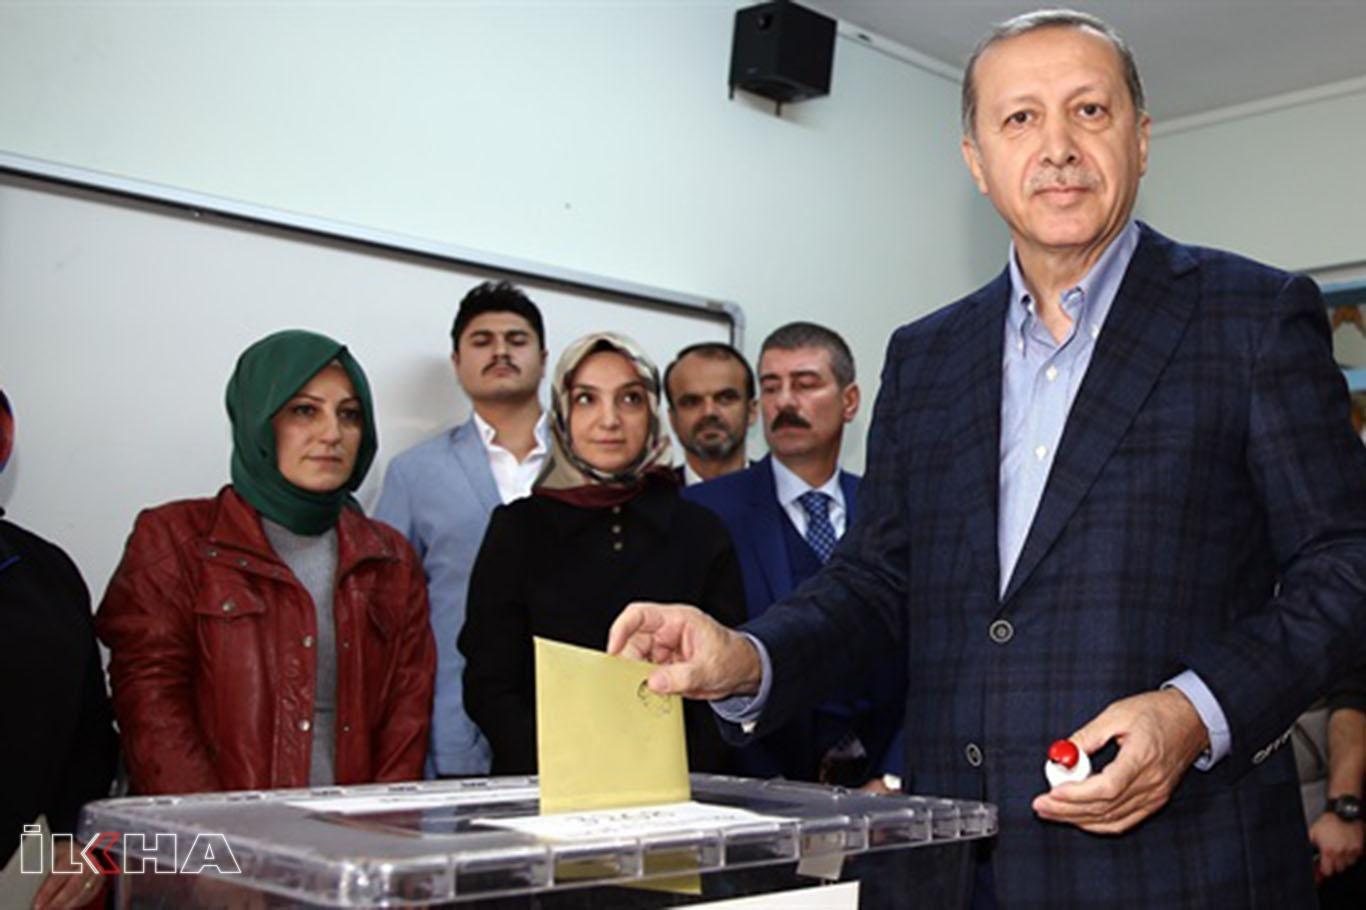 President Erdoğan casts vote in Istanbul